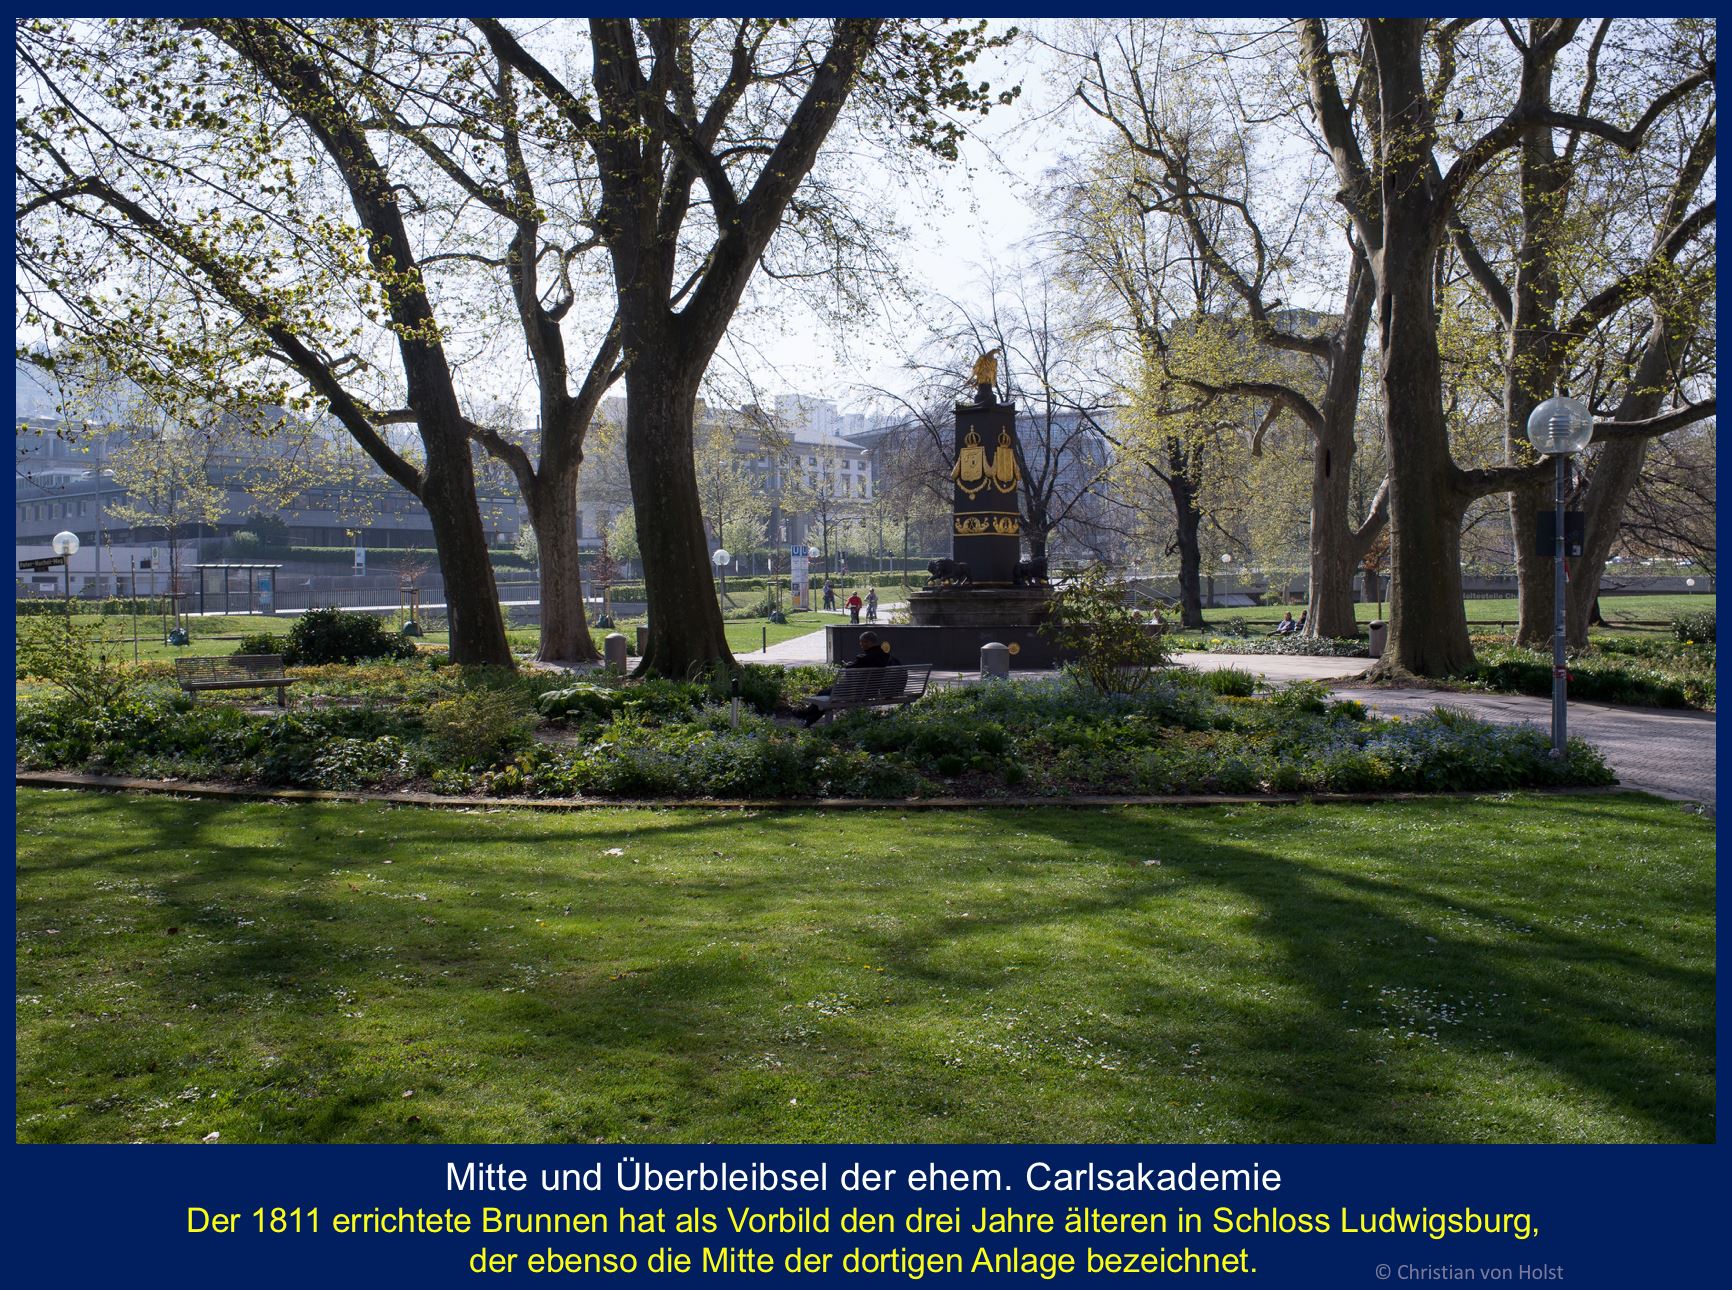 Carlsakademie: Akademiegarten und Löwenbrunnen – leider ohne Carlsakademie inzwischen